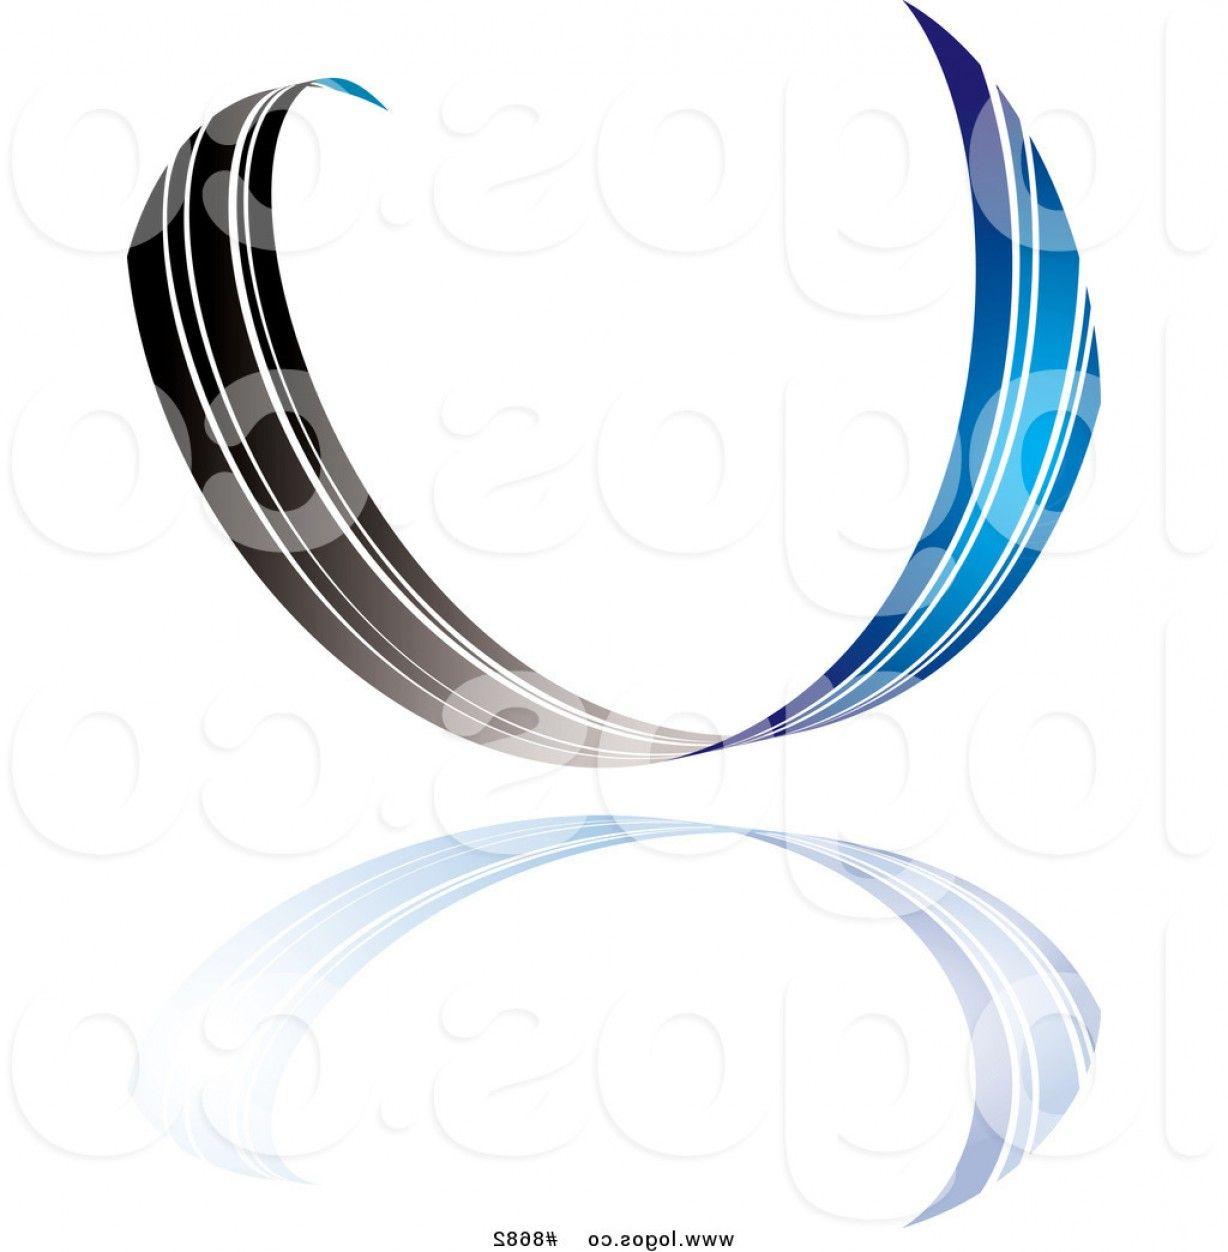 Black Ribbon Logo - Royalty Free Clip Art Vector Logo Of A Blue And Black Ribbon Wave